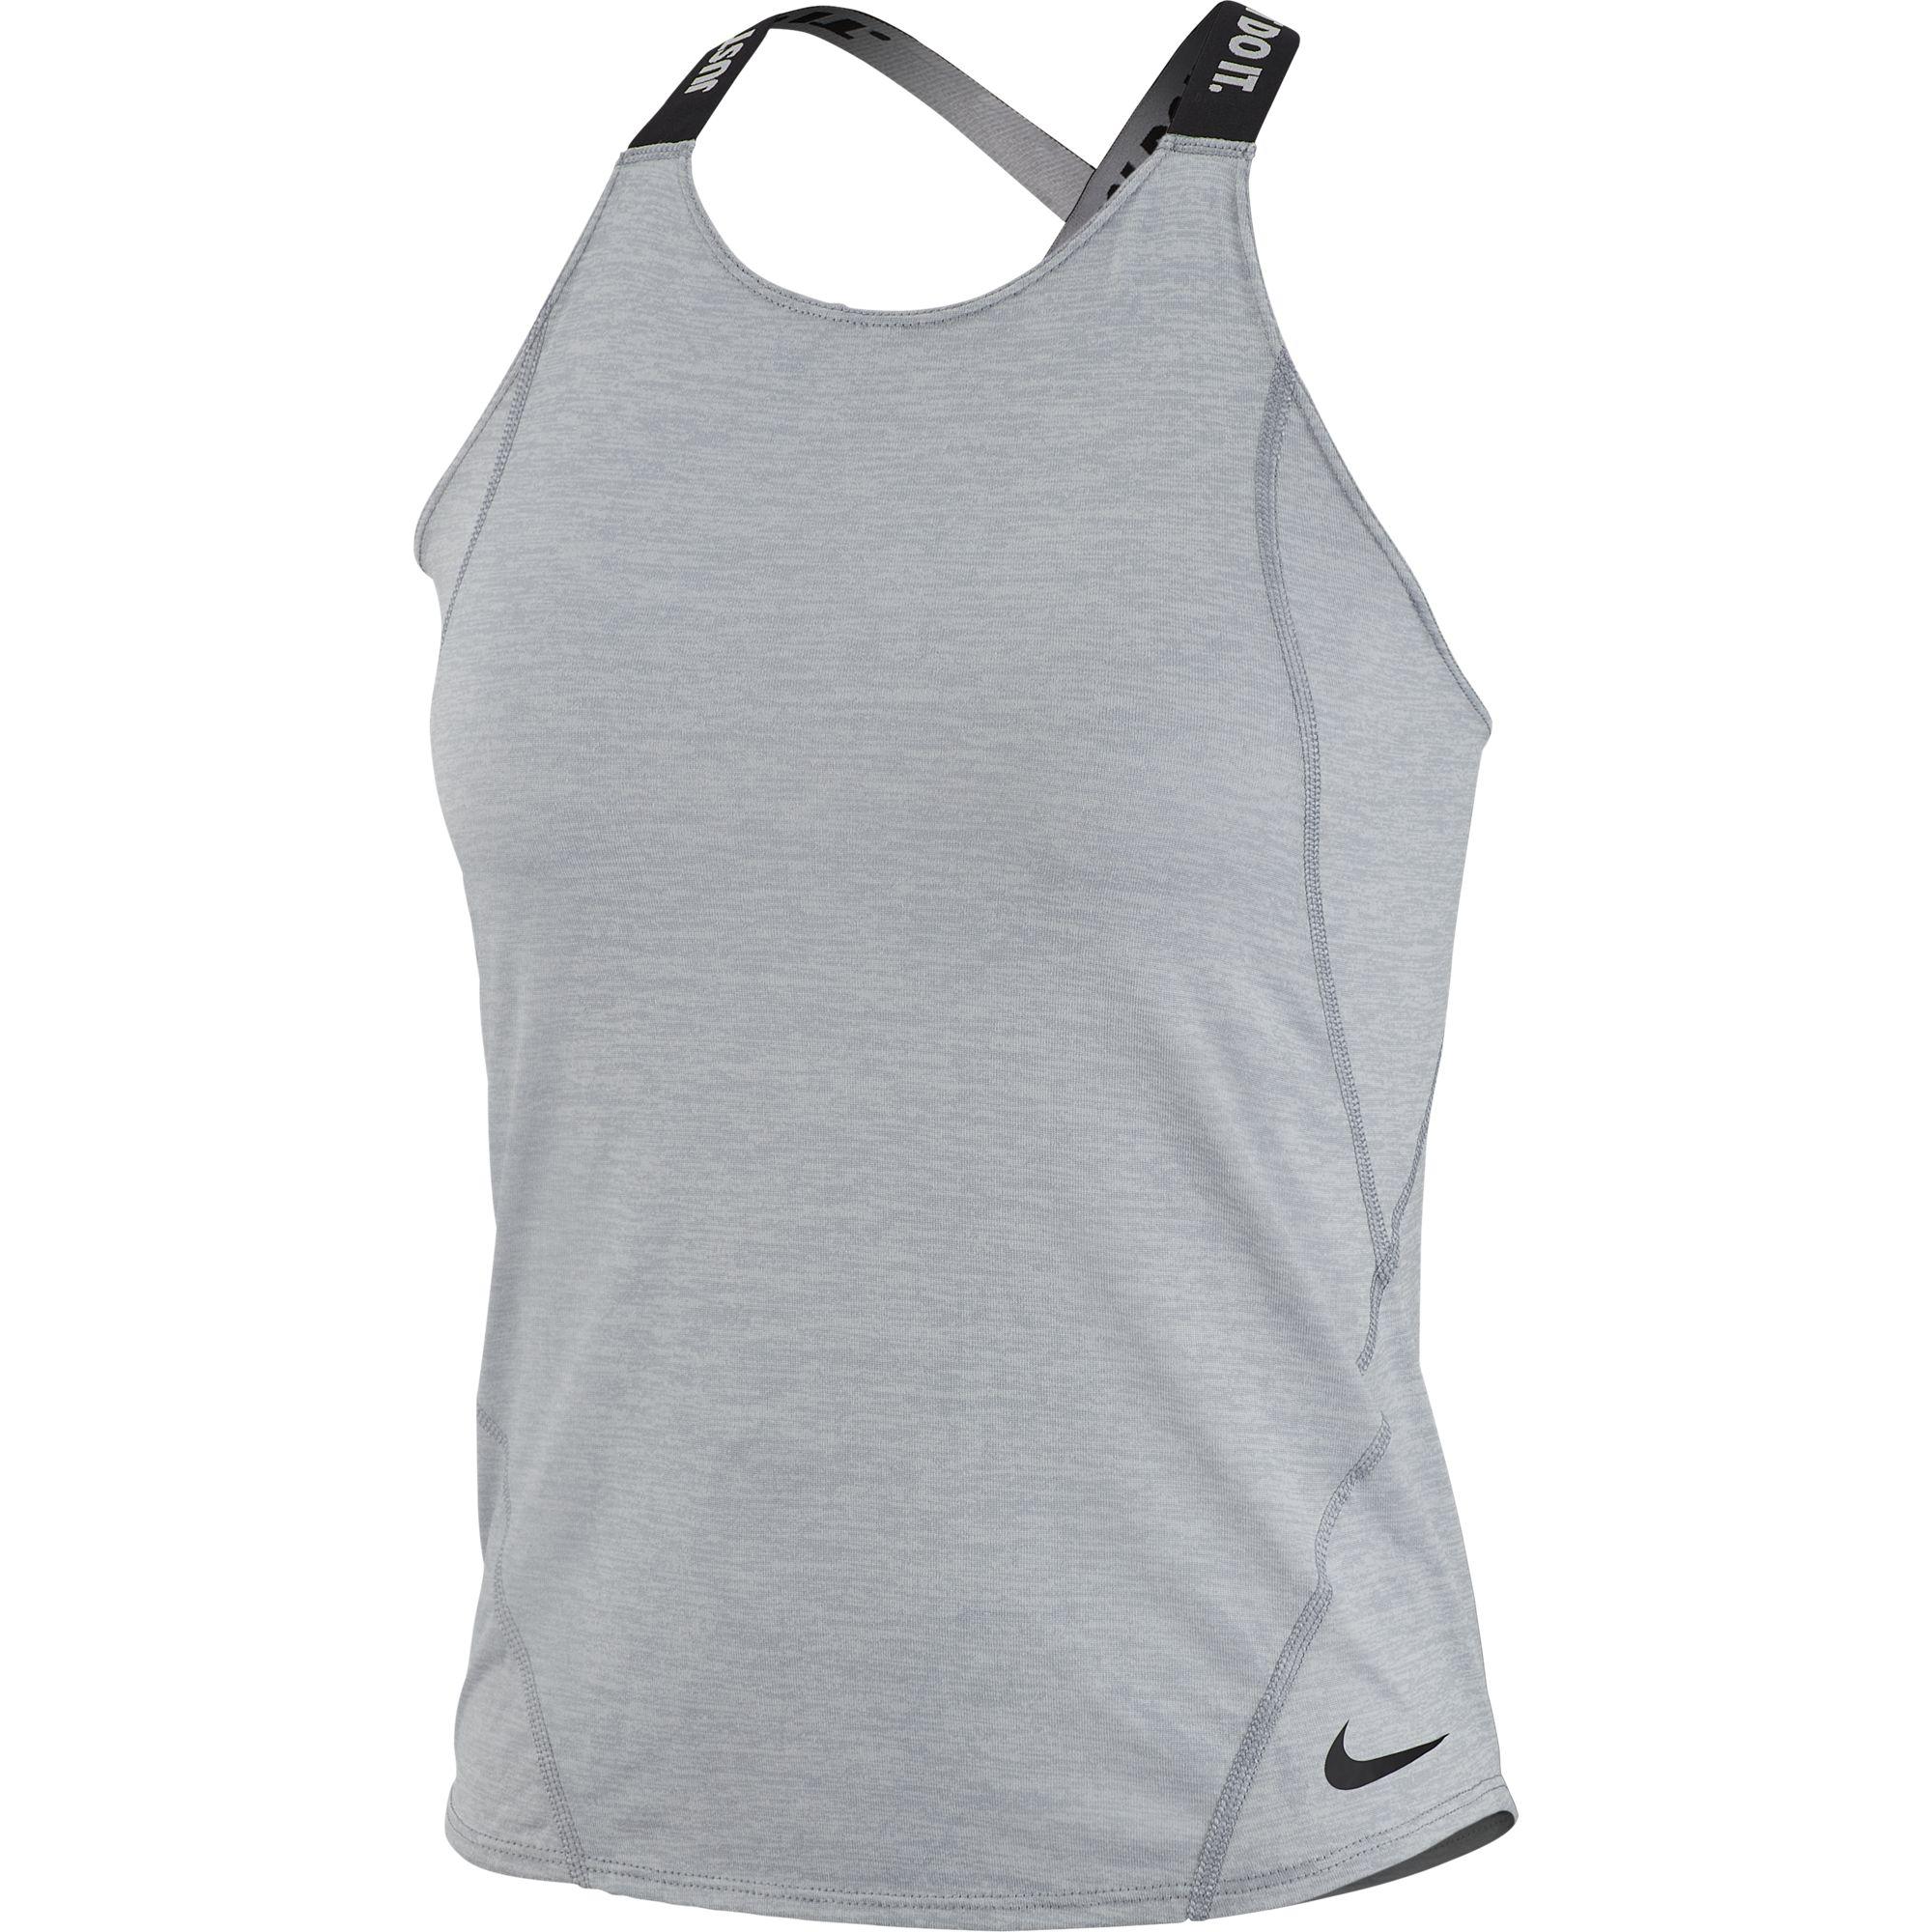 Nike Girls Dri-FIT Training Tank Top - Wolf Grey/Black - Tennisnuts.com